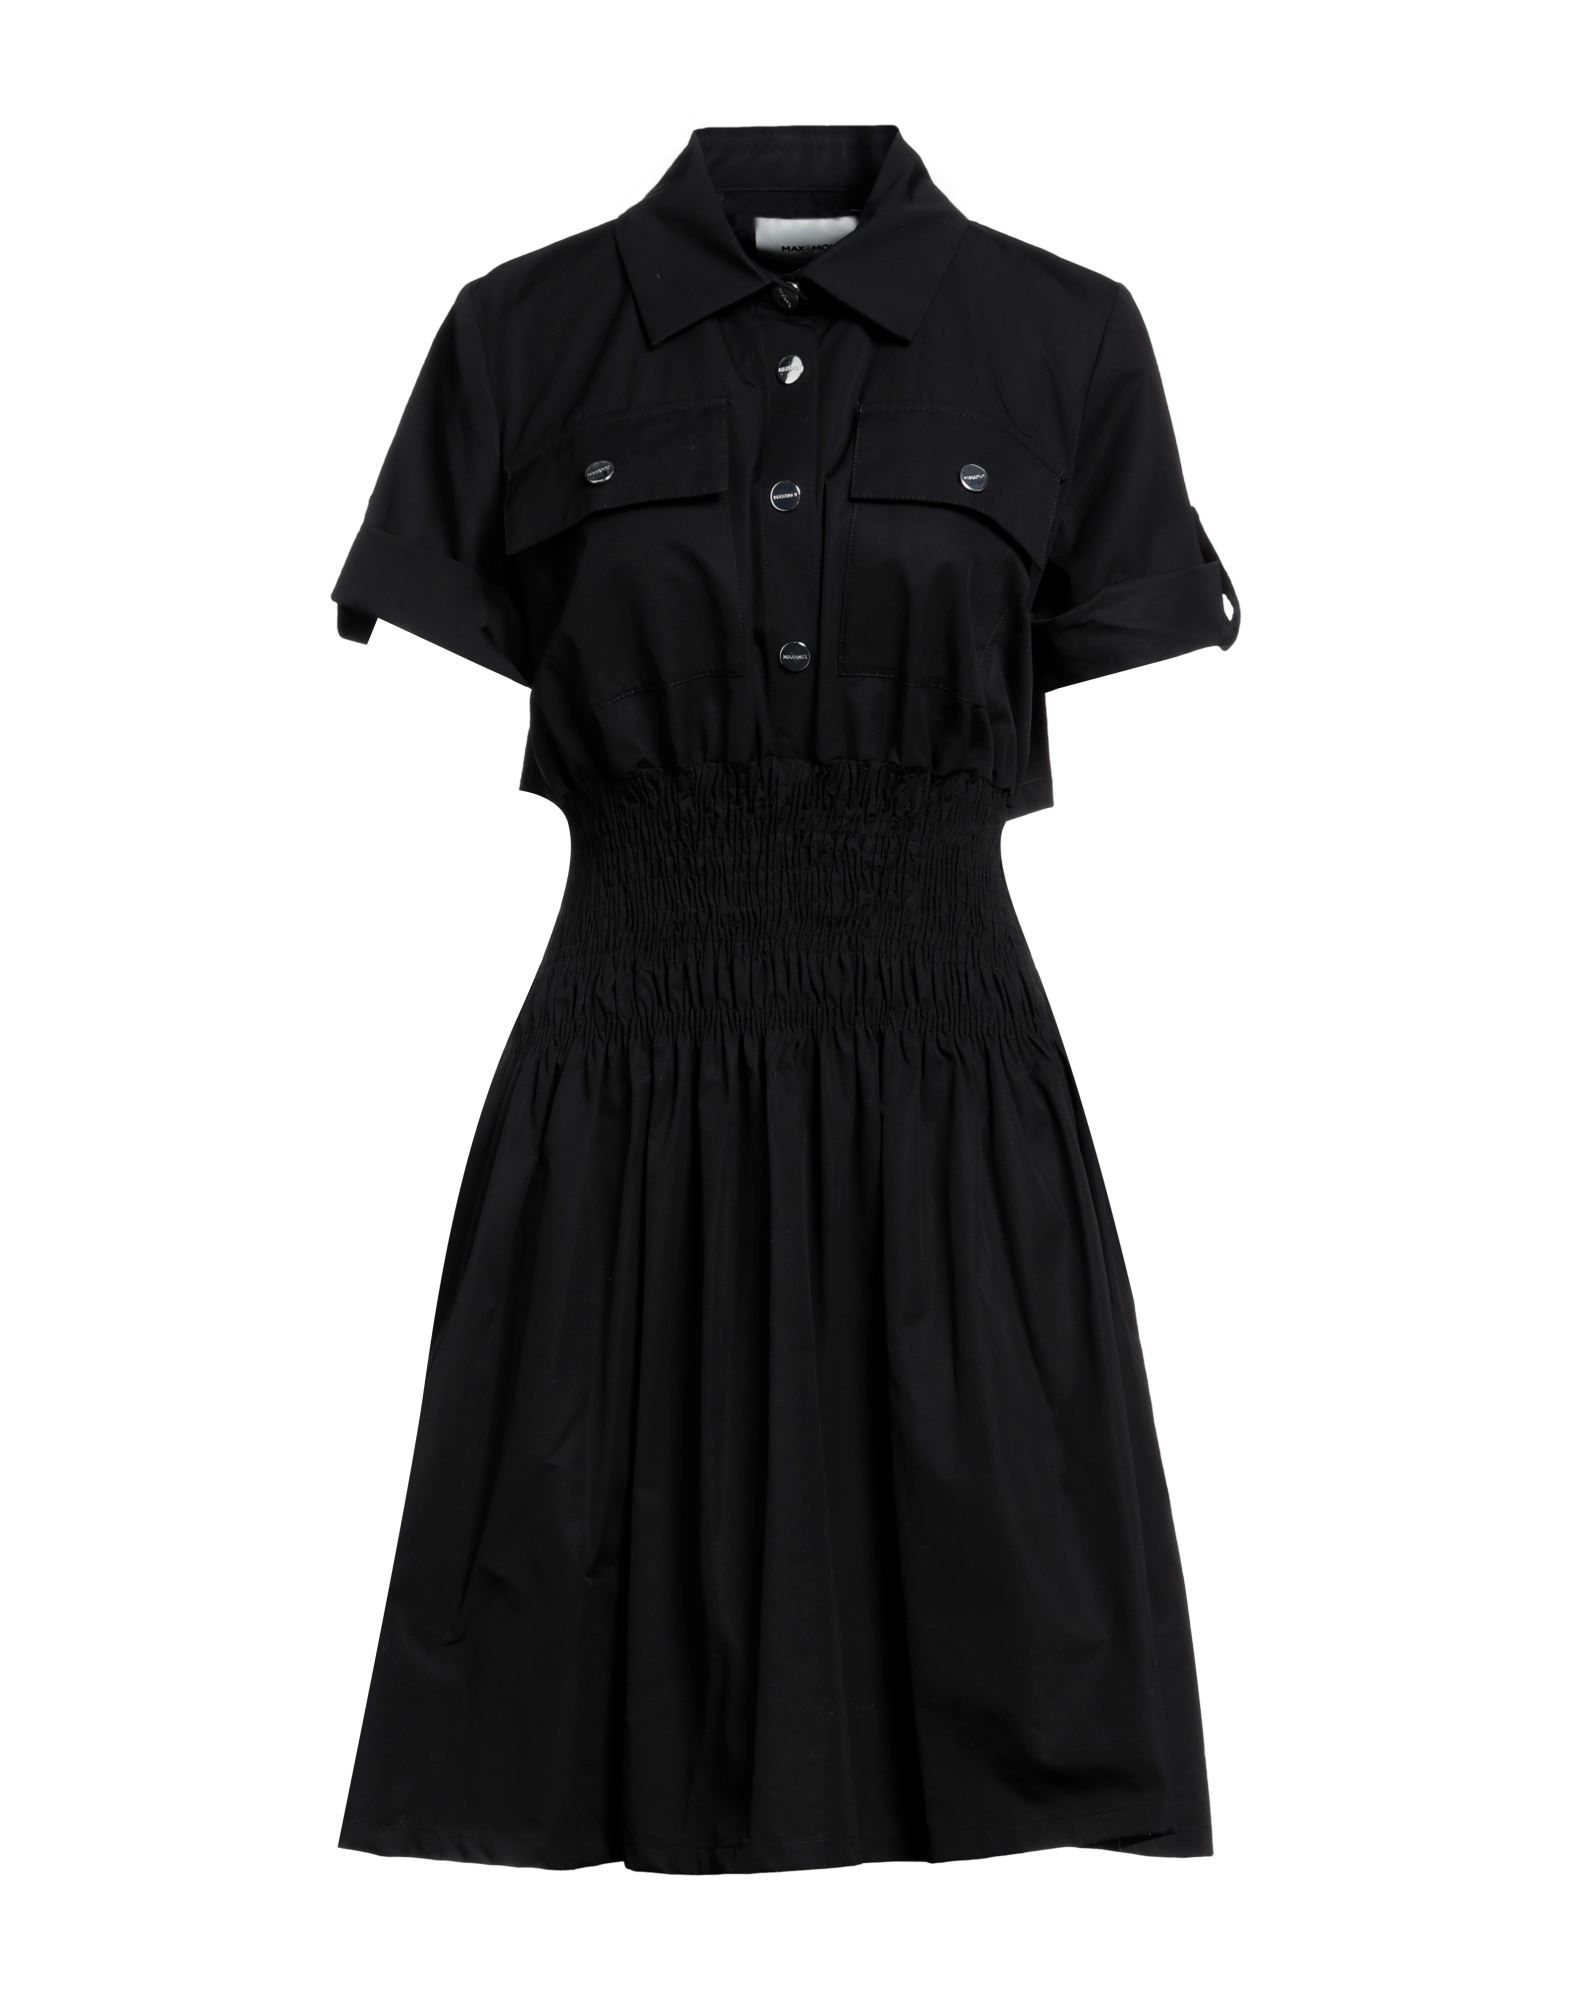 Max & Moi Woman Mini Dress Black Size 8 Cotton